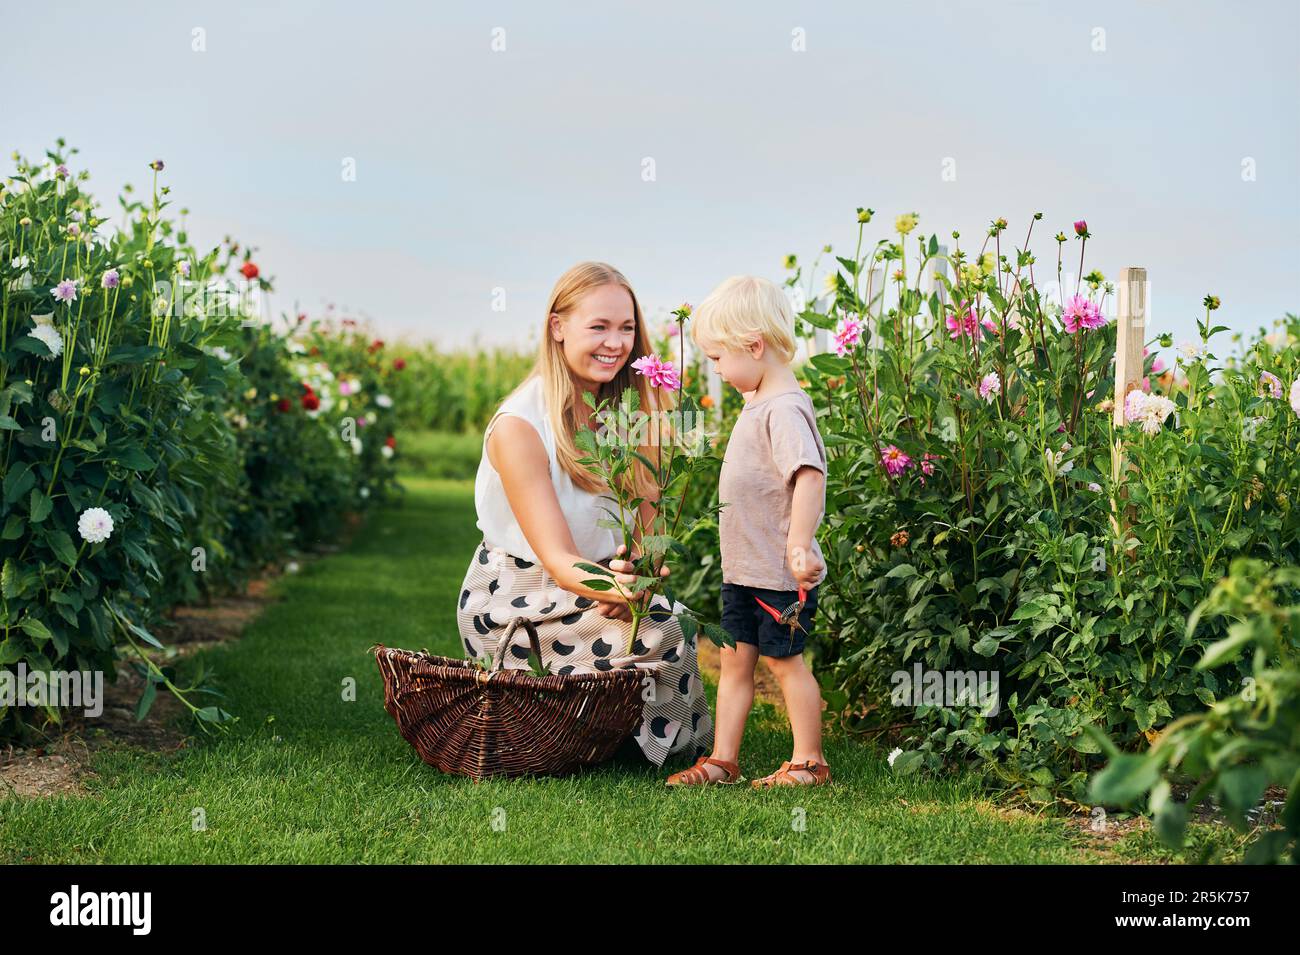 Madre joven feliz y niño pequeño trabajando en hermoso jardín de flores, recogiendo flores, estilo de vida familiar Foto de stock